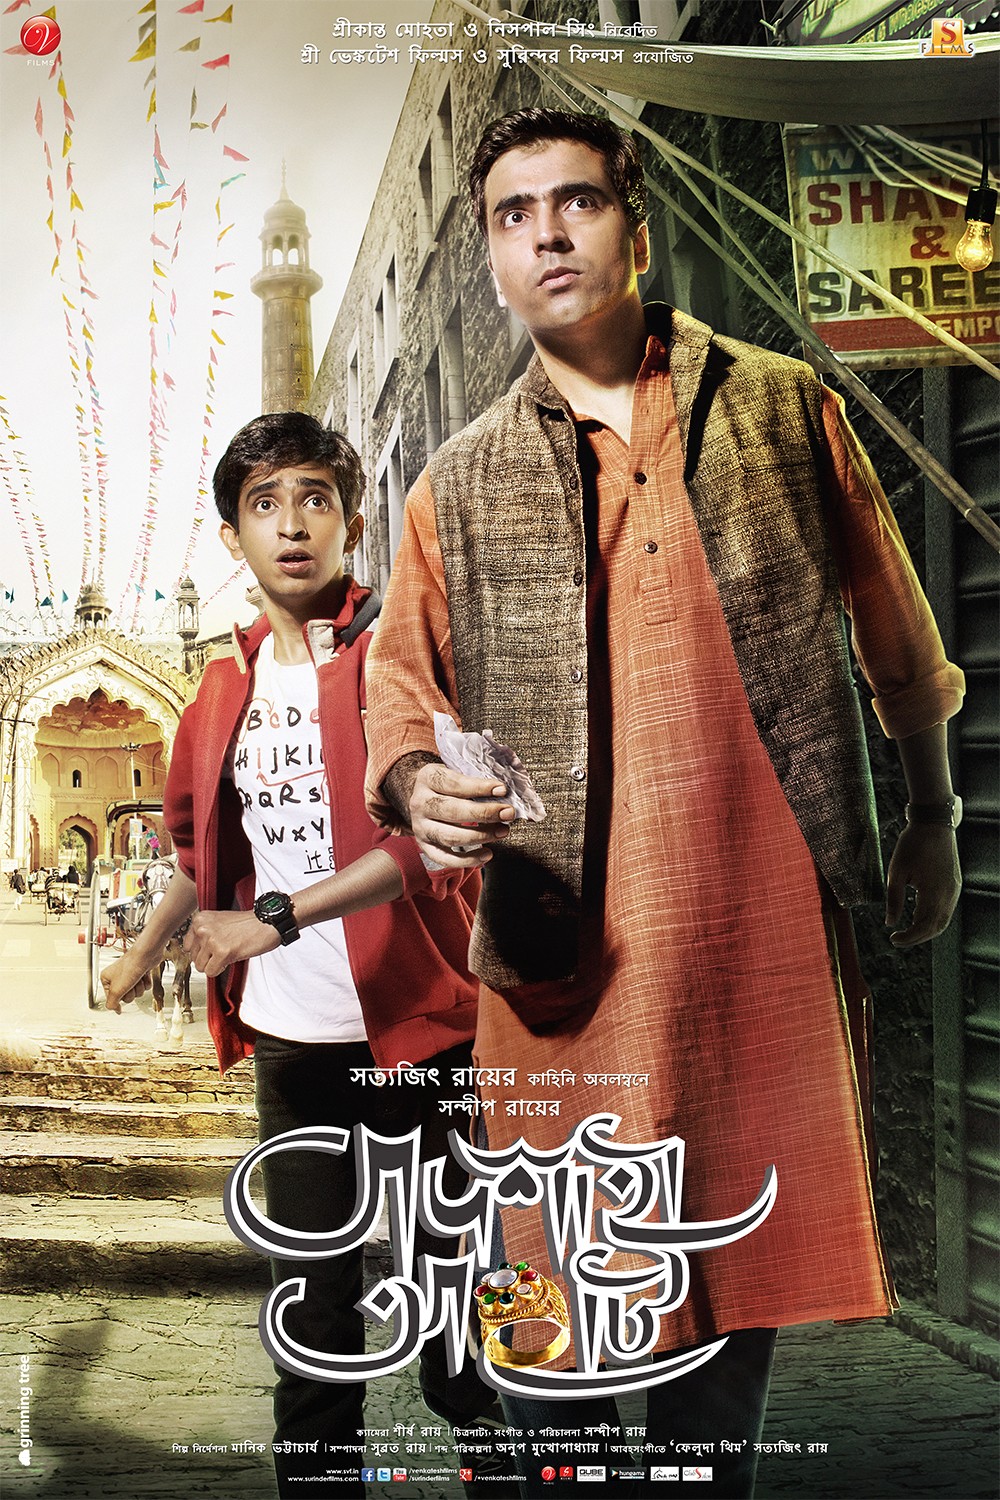 Extra Large Movie Poster Image for Badshahi Angti (#6 of 6)